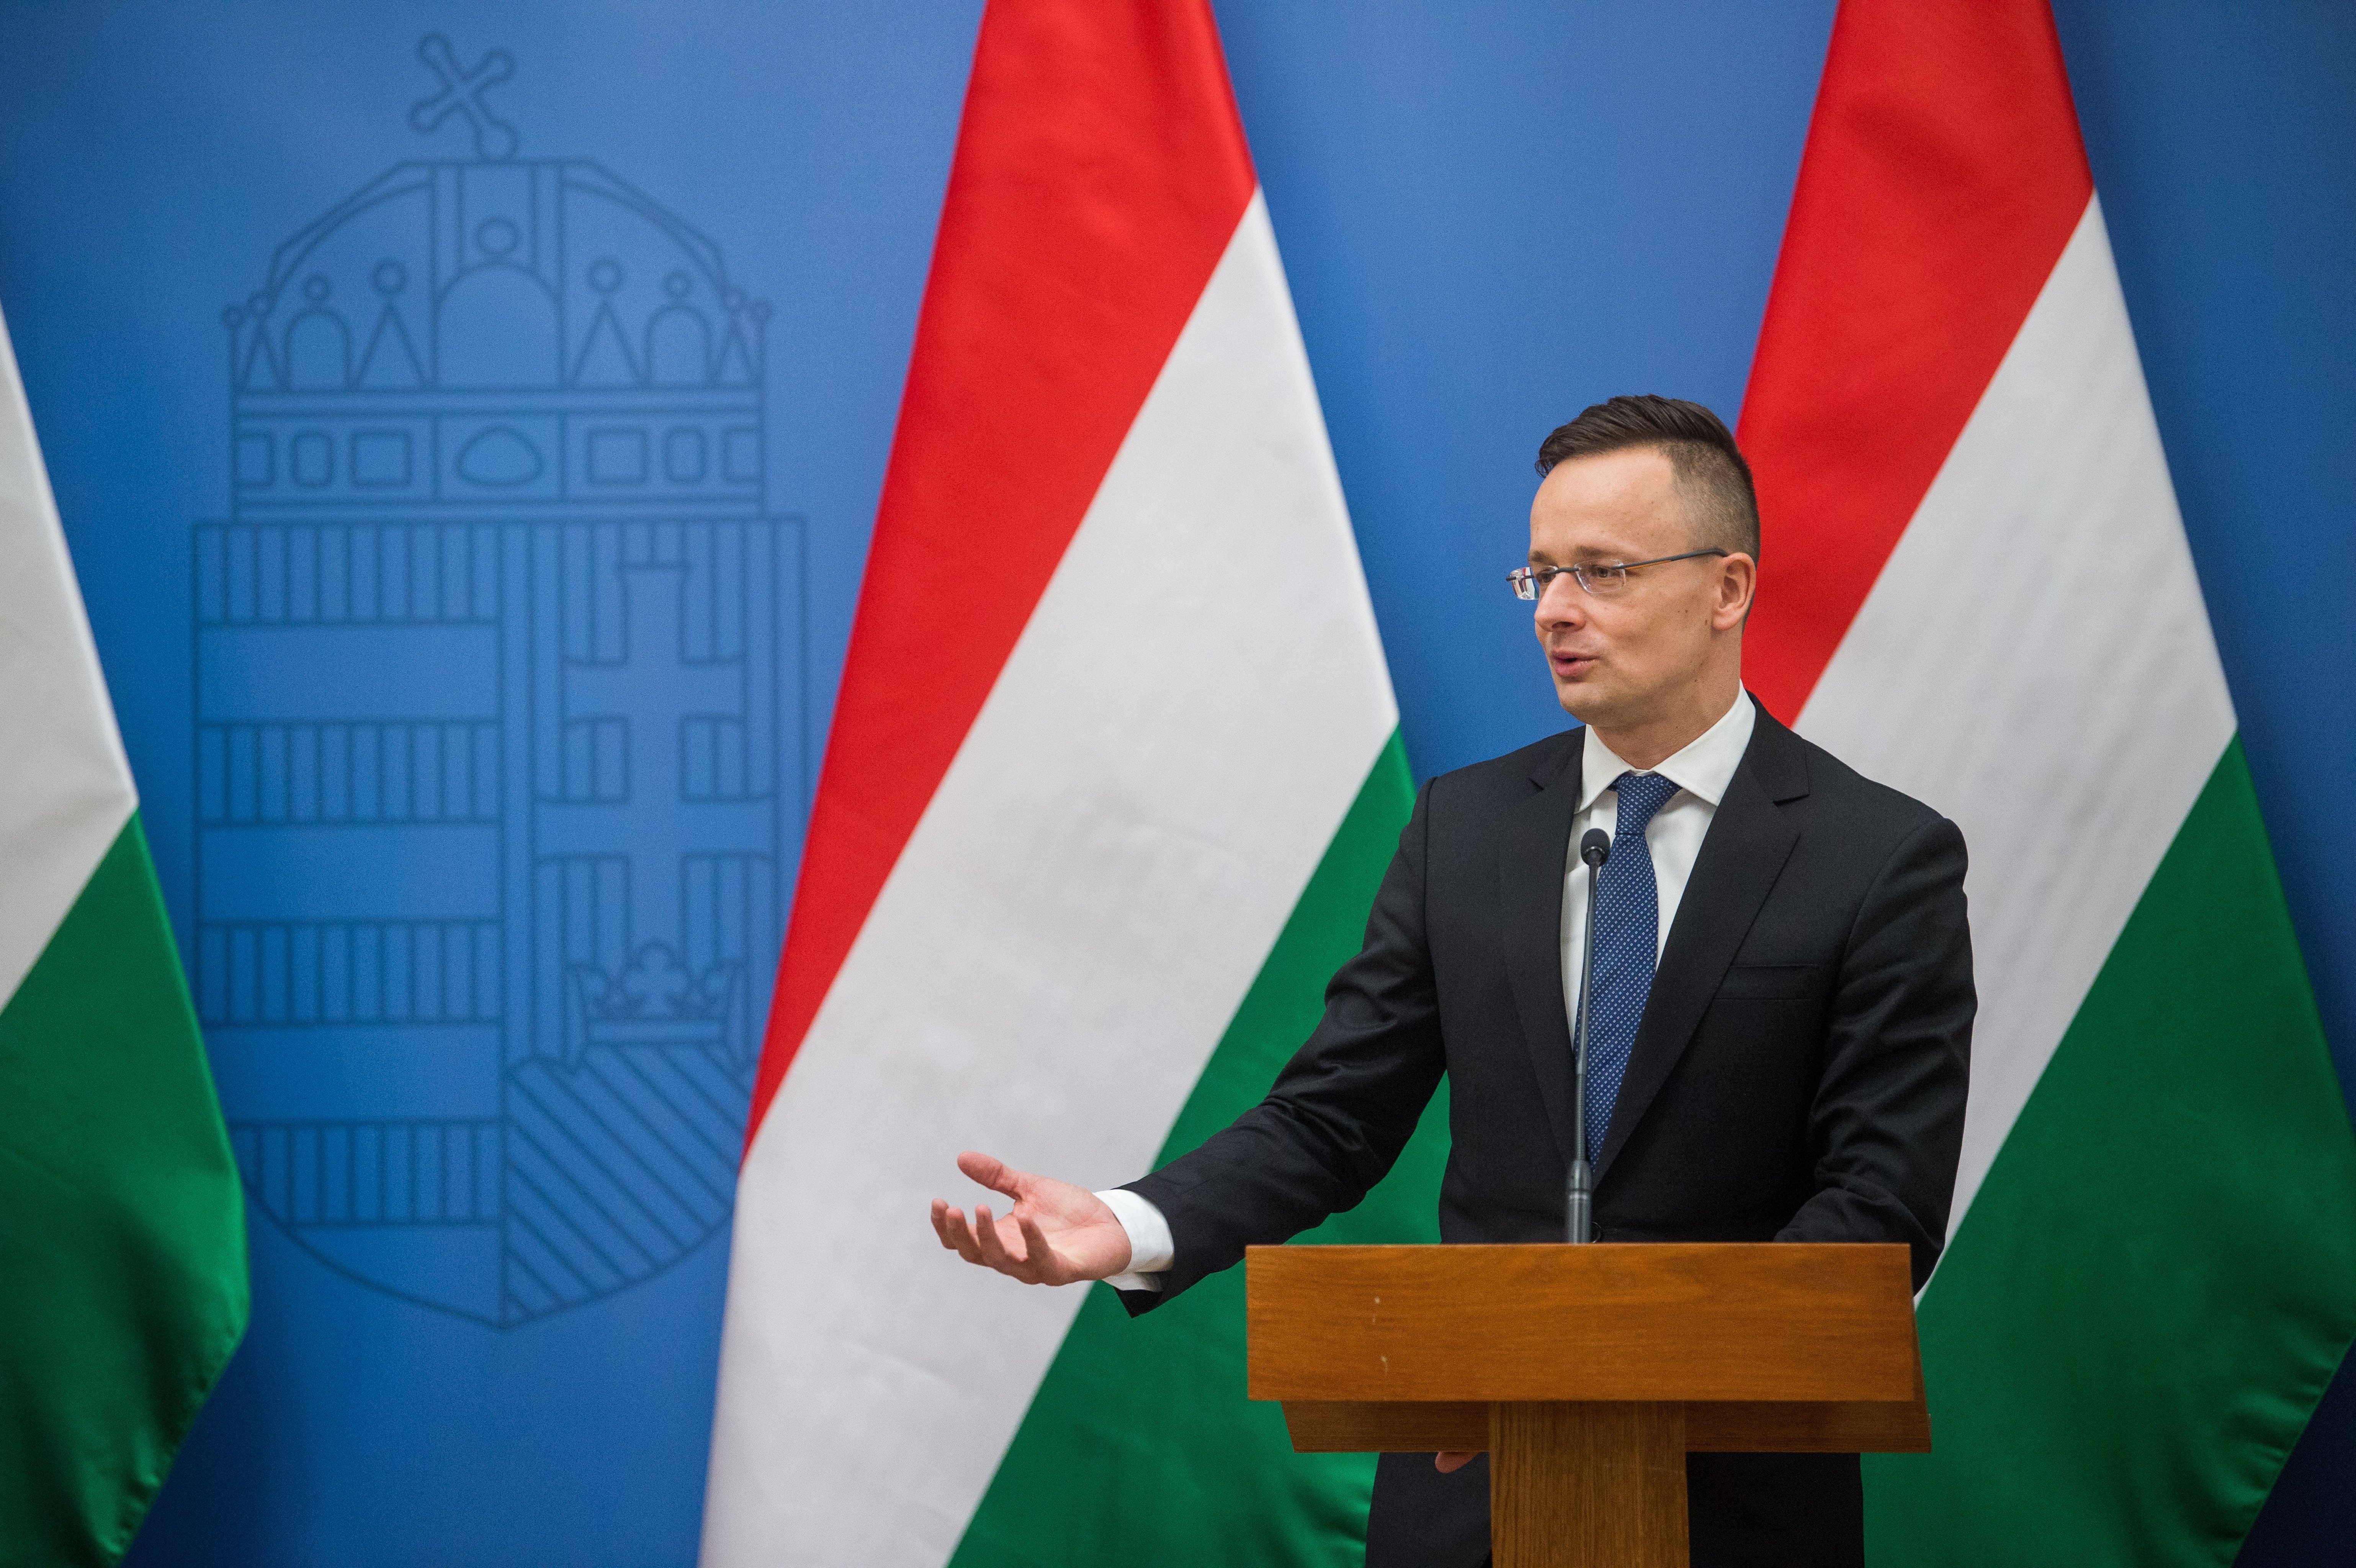 SZIJJÁRTÓ Péter foreign minister